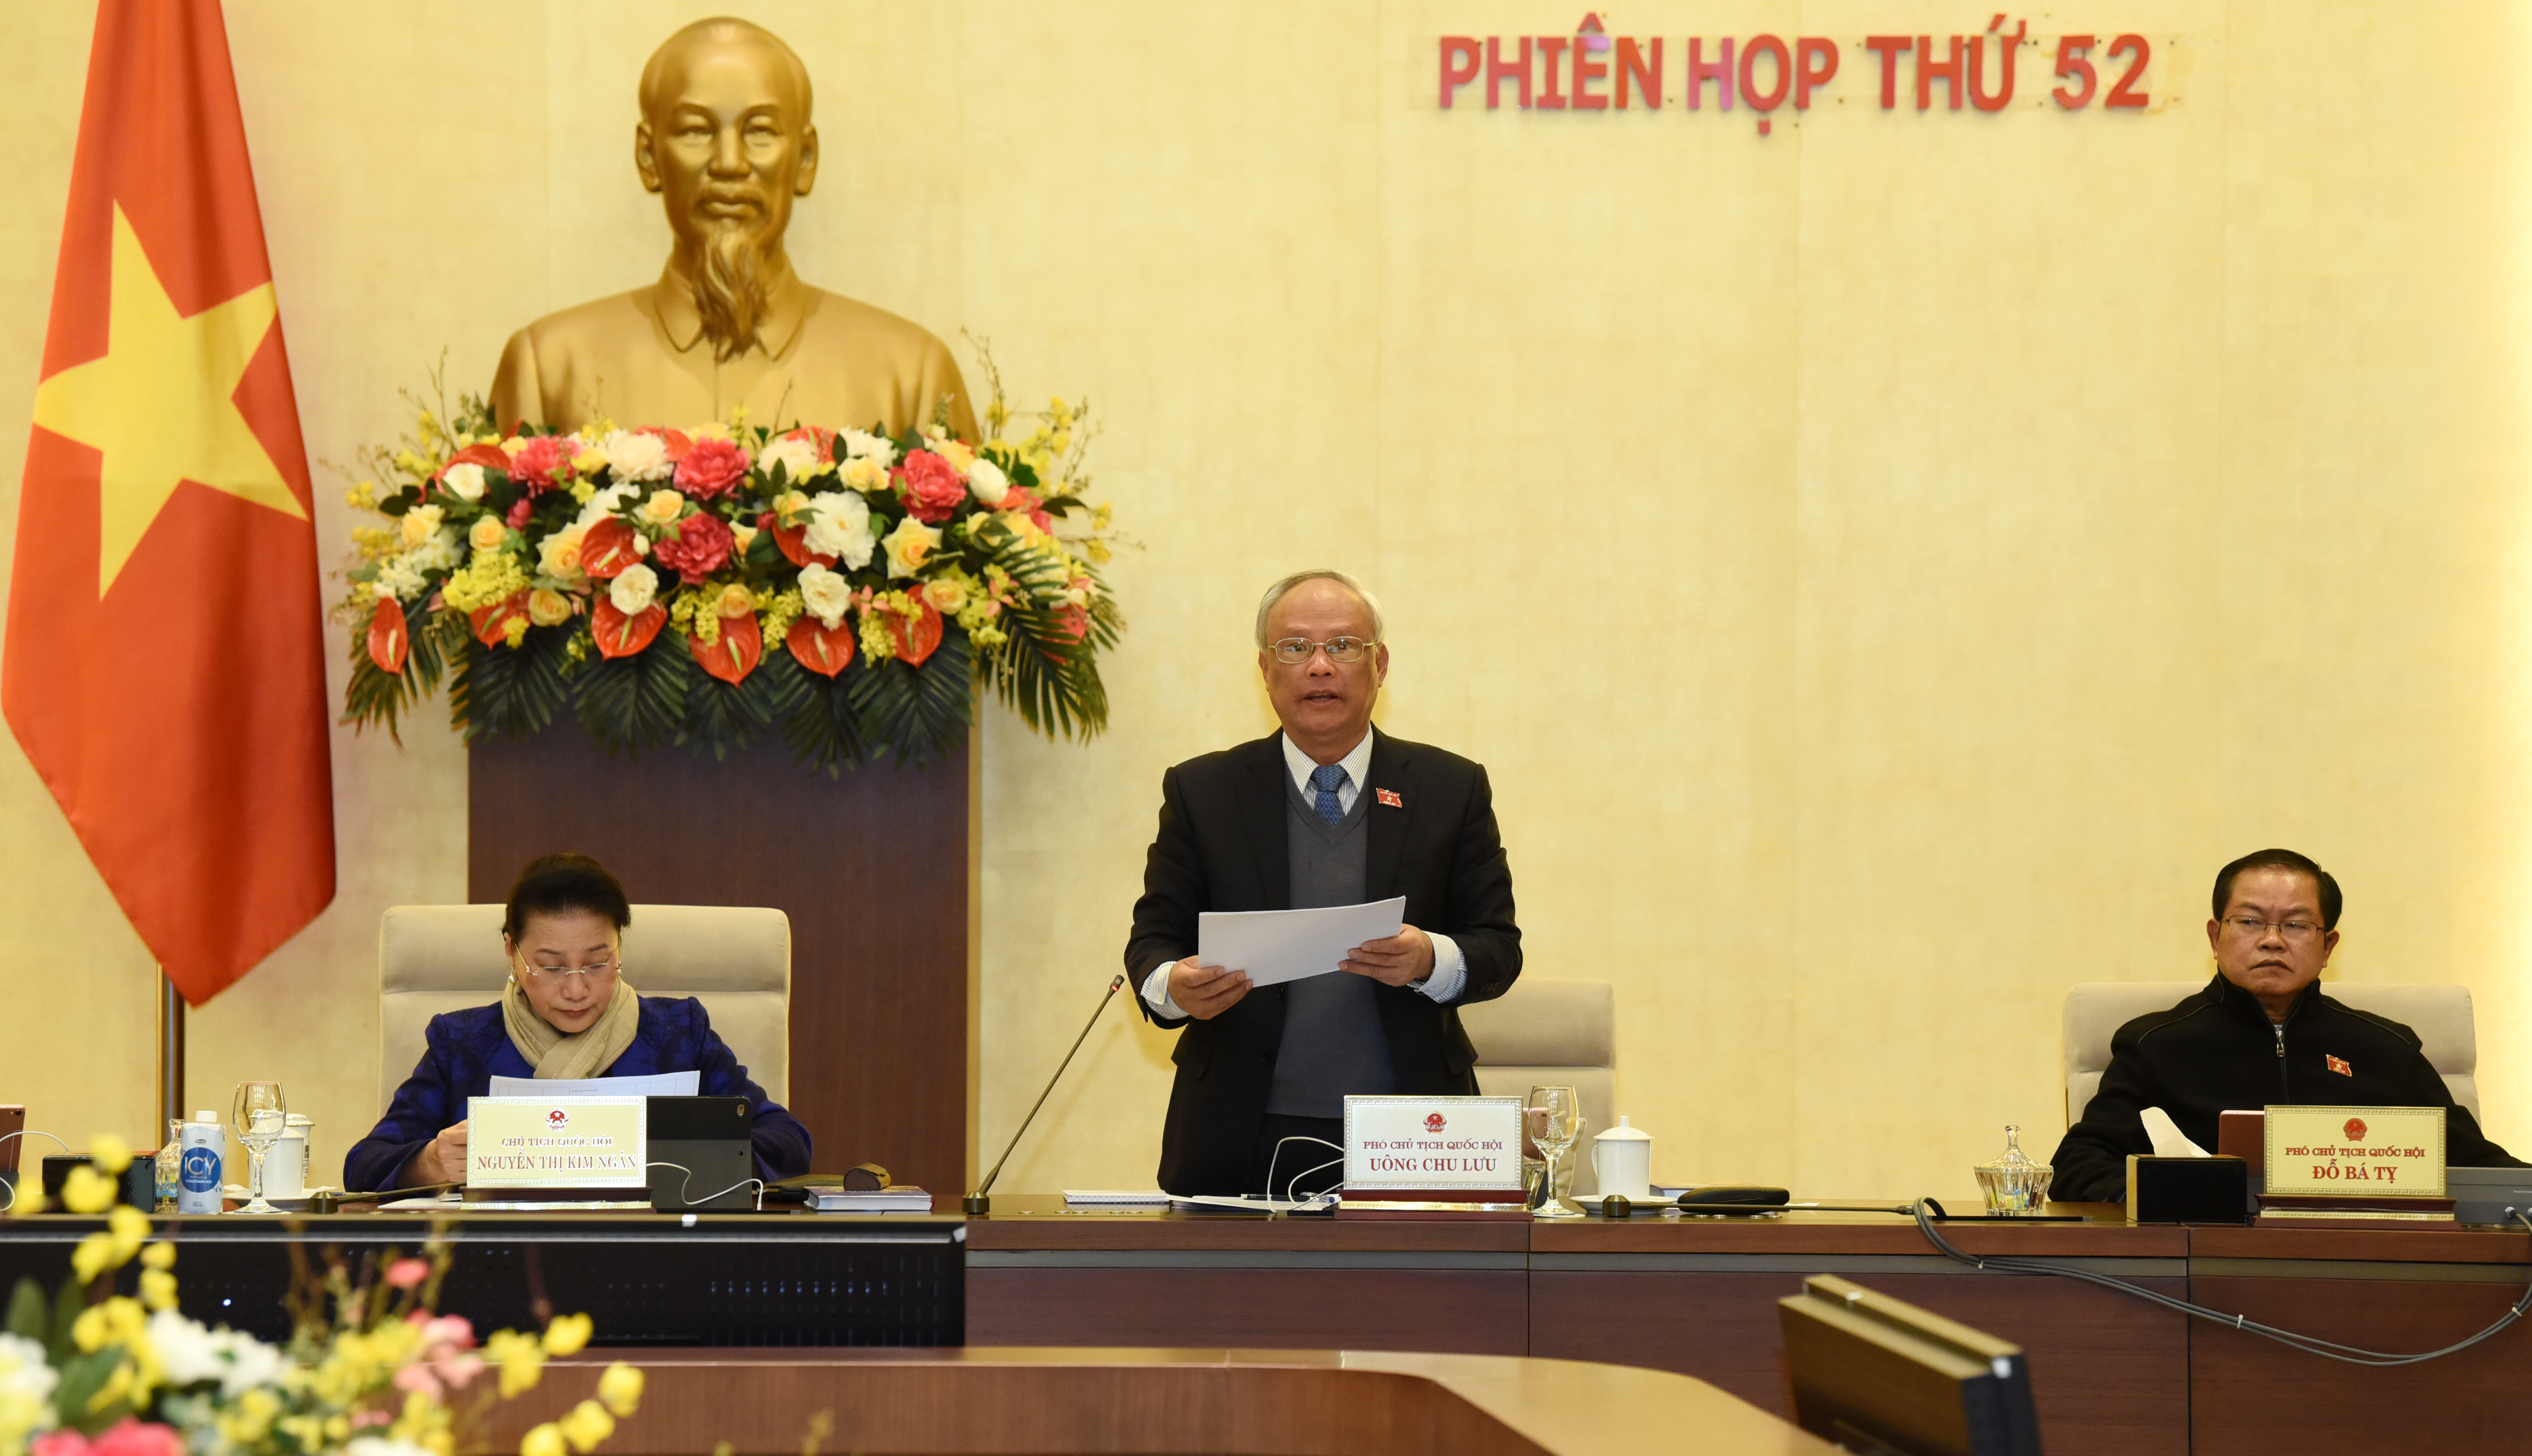 Phó Chủ tịch Quốc hội Uông Chu Lưu điều hành phiên họp